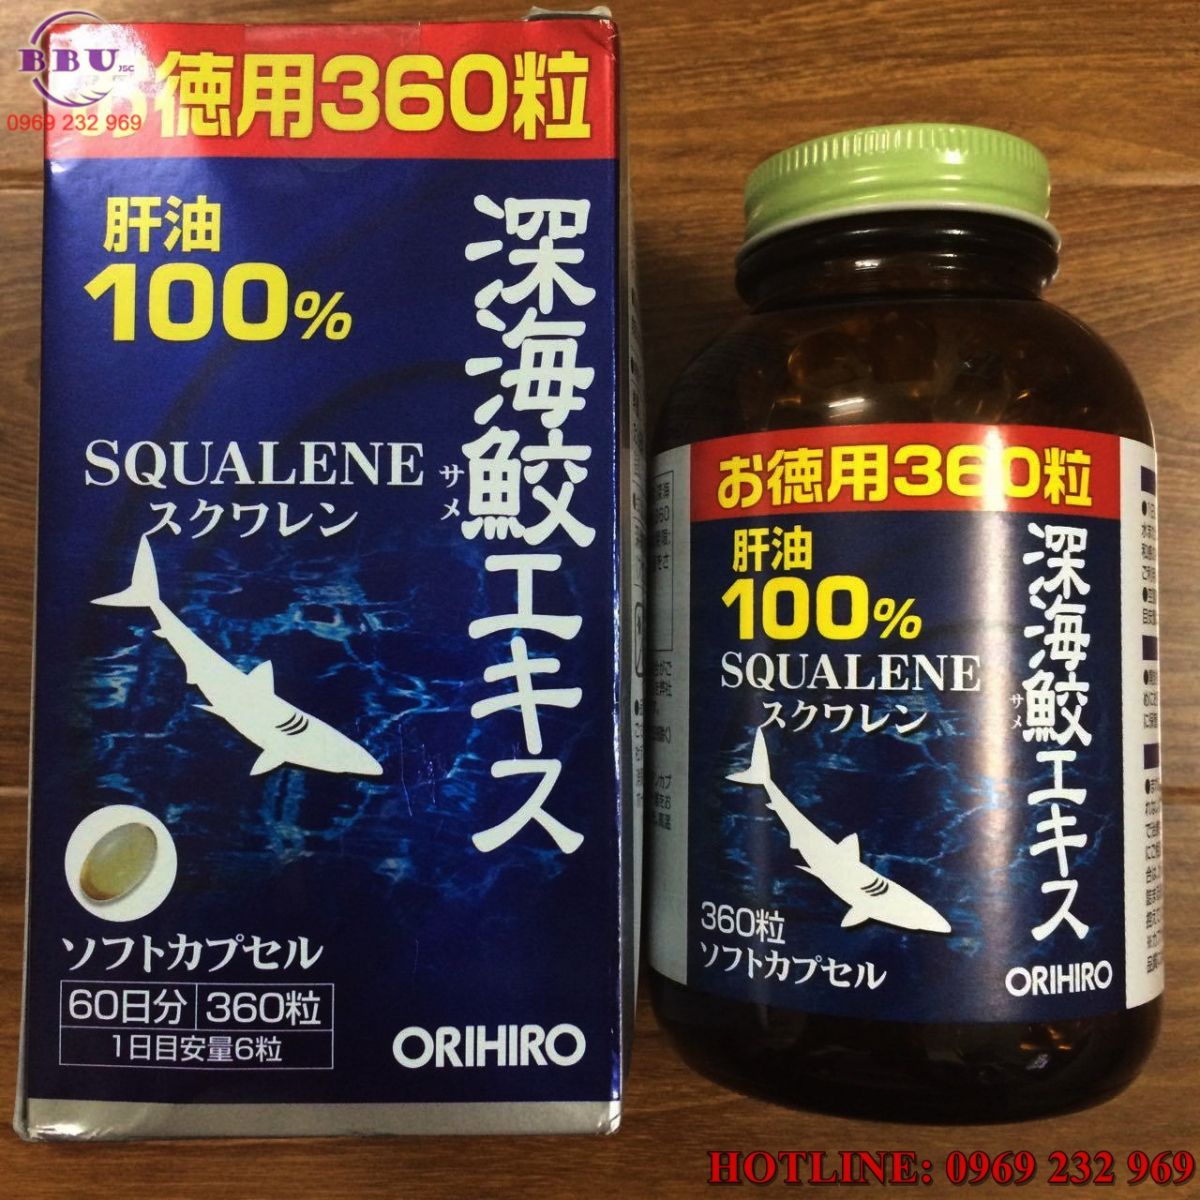 Thành phần có trong sản phẩm sụn vi cá mập Squalene Orihiro Nhật Bản